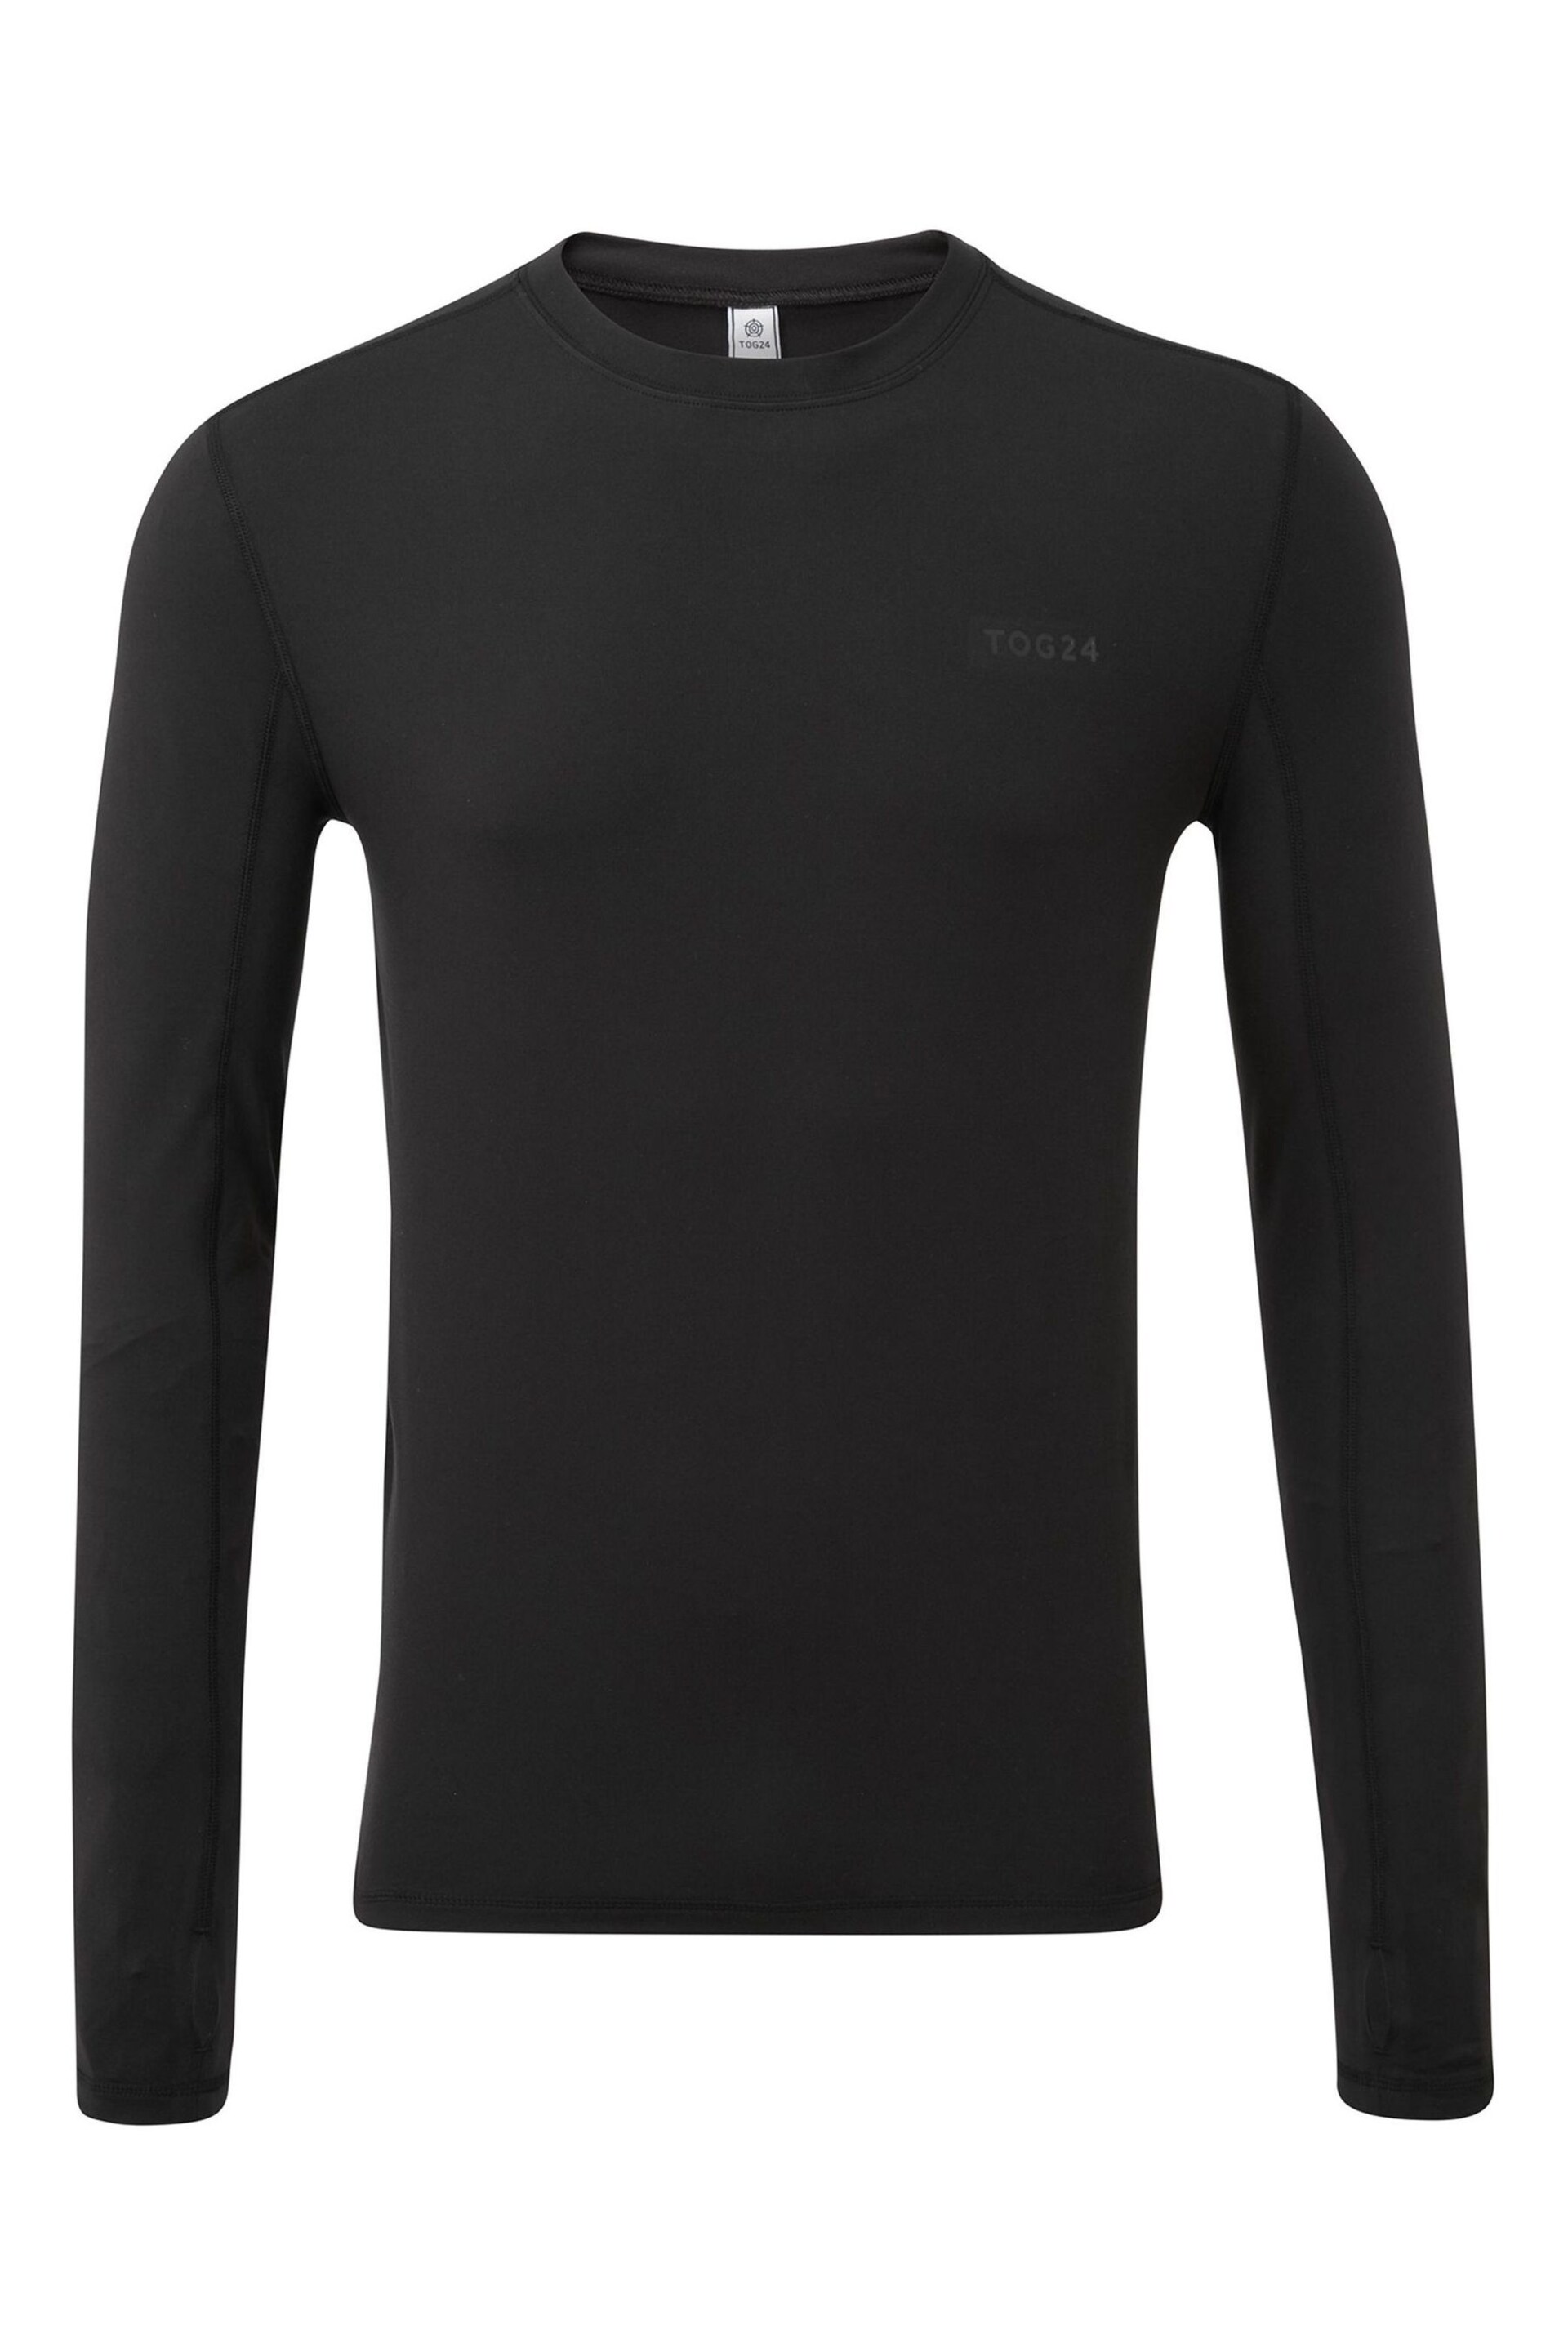 Tog 24 Cool Black Snowdon Thermal Zip Neck Saga T-Shirt - Image 4 of 4